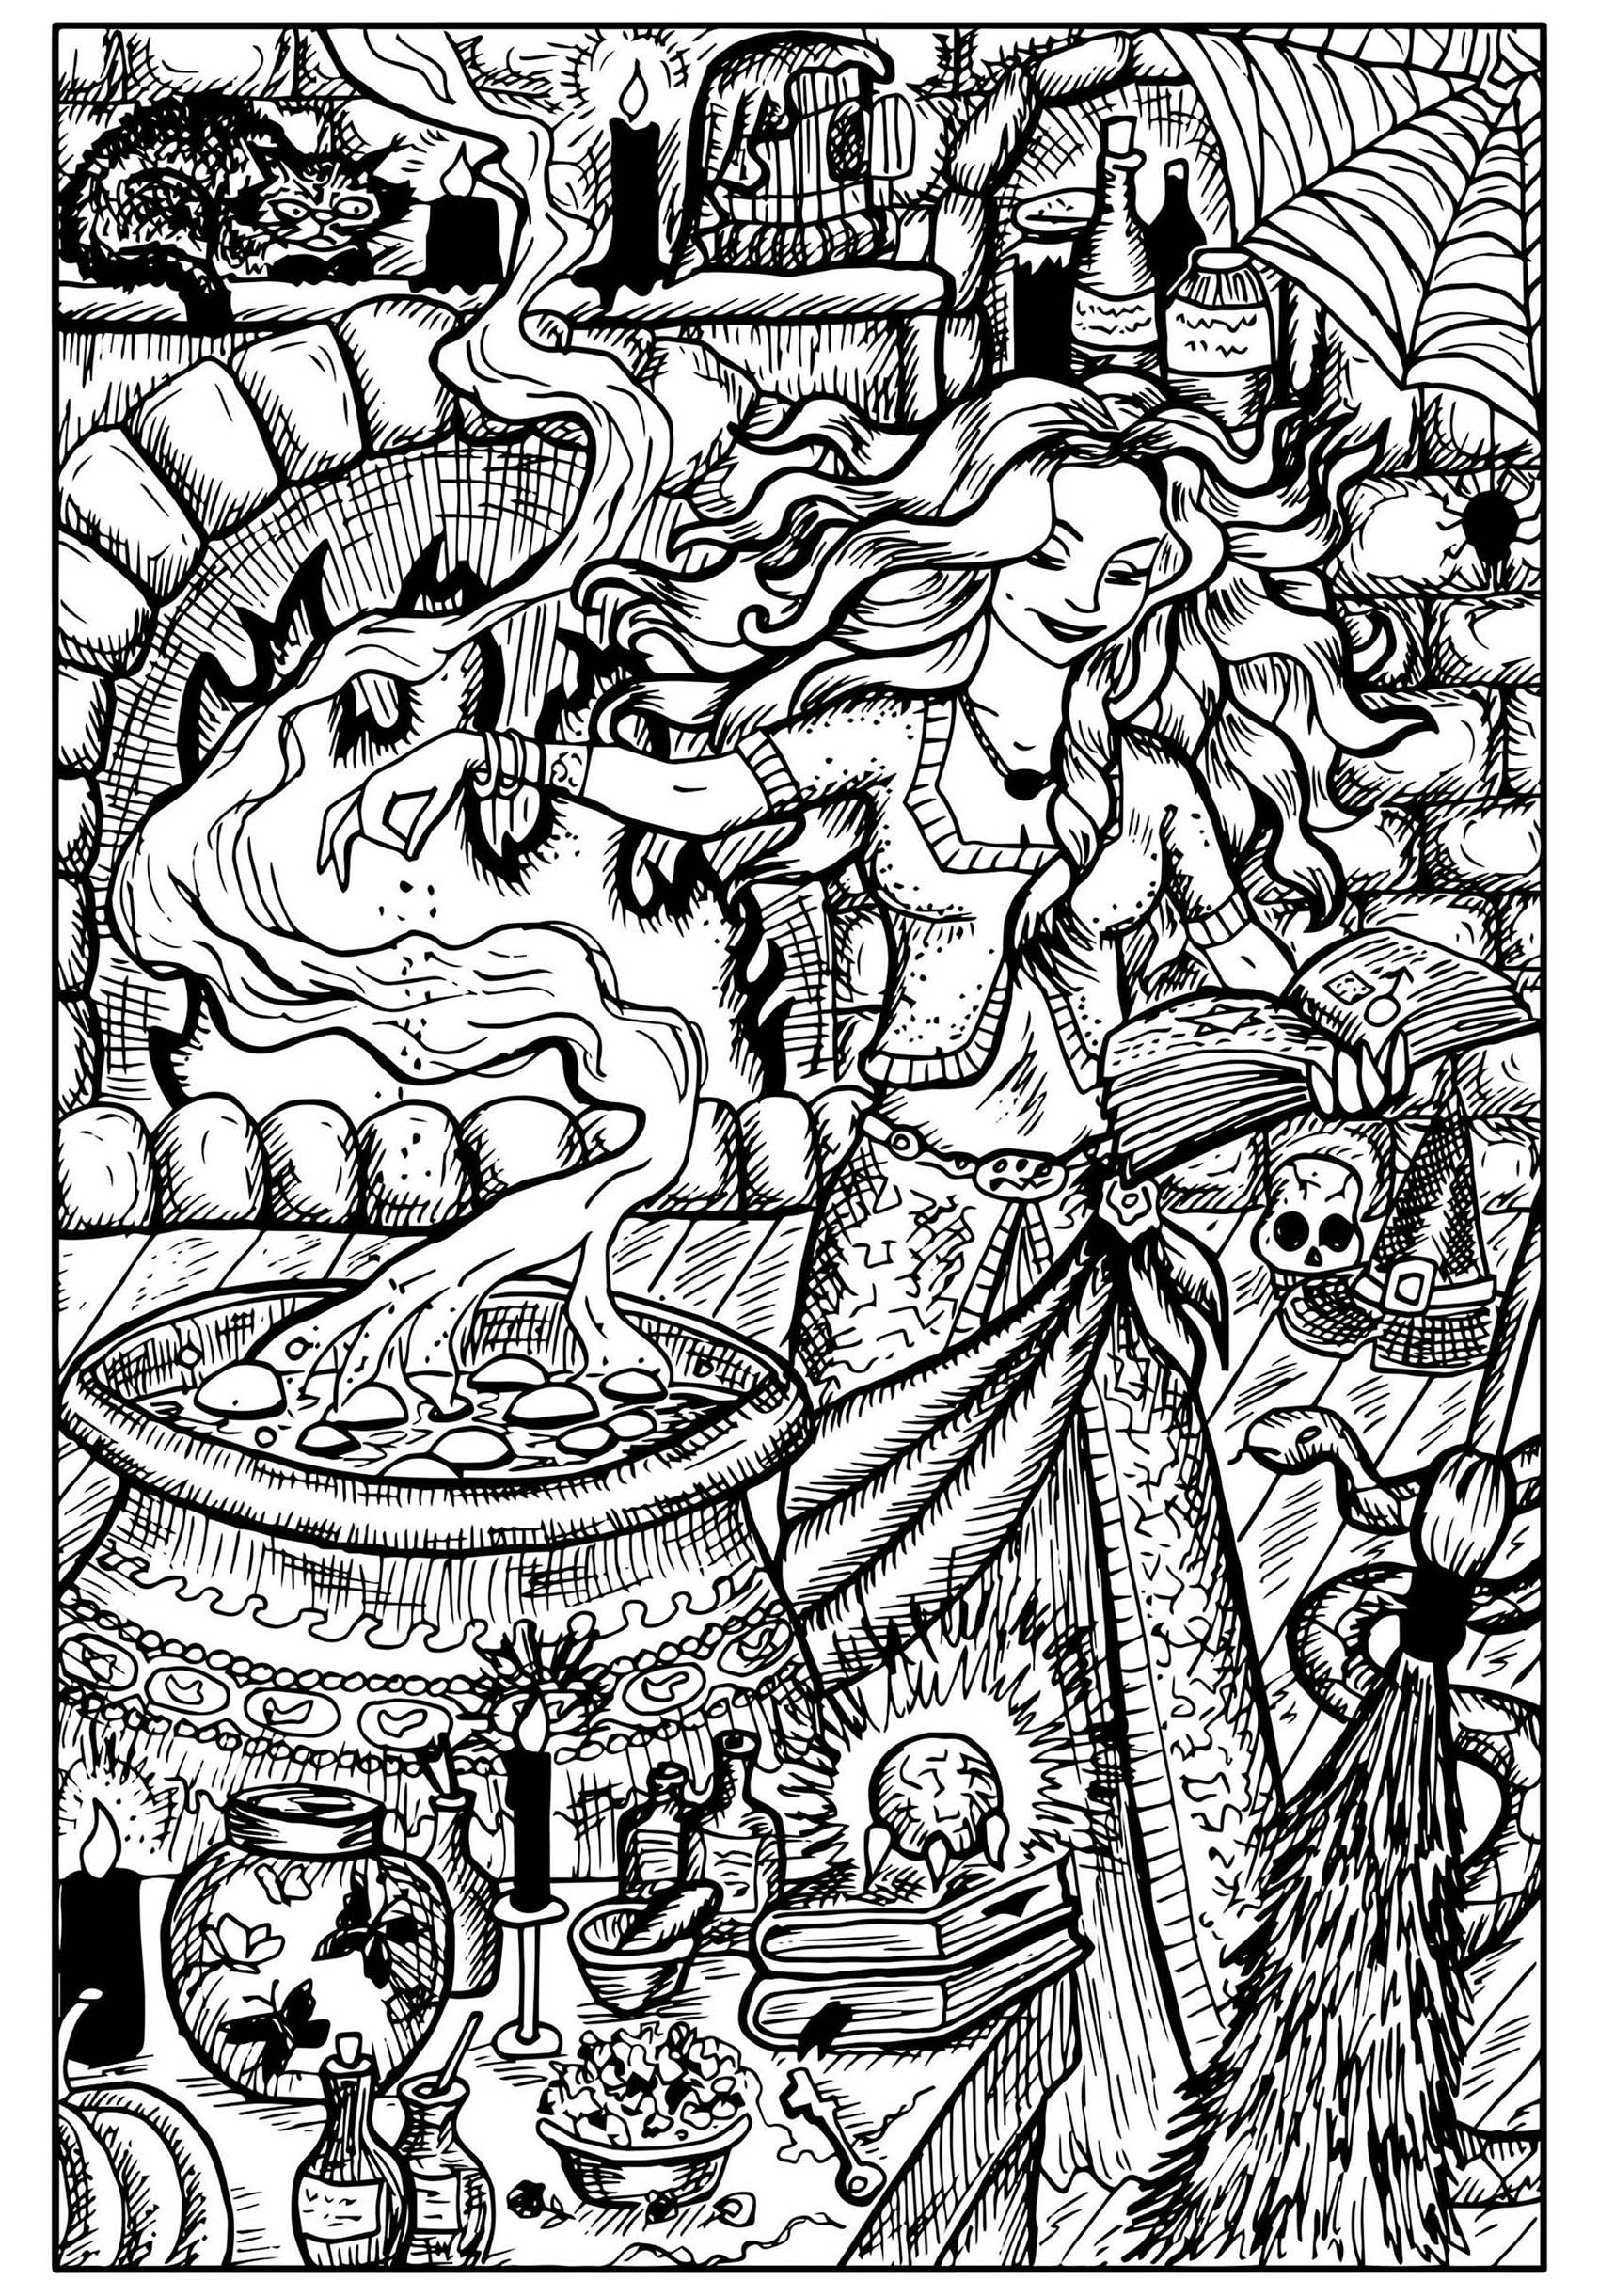 Hübsche Hexe und ihr Kessel. Diese Hexe bereitet in ihrem Zauberkessel einen bösen Trank zu. Ihre Werkstatt ist voll von schwarzen Katzen, Spinnweben, Insekten und Giften ....